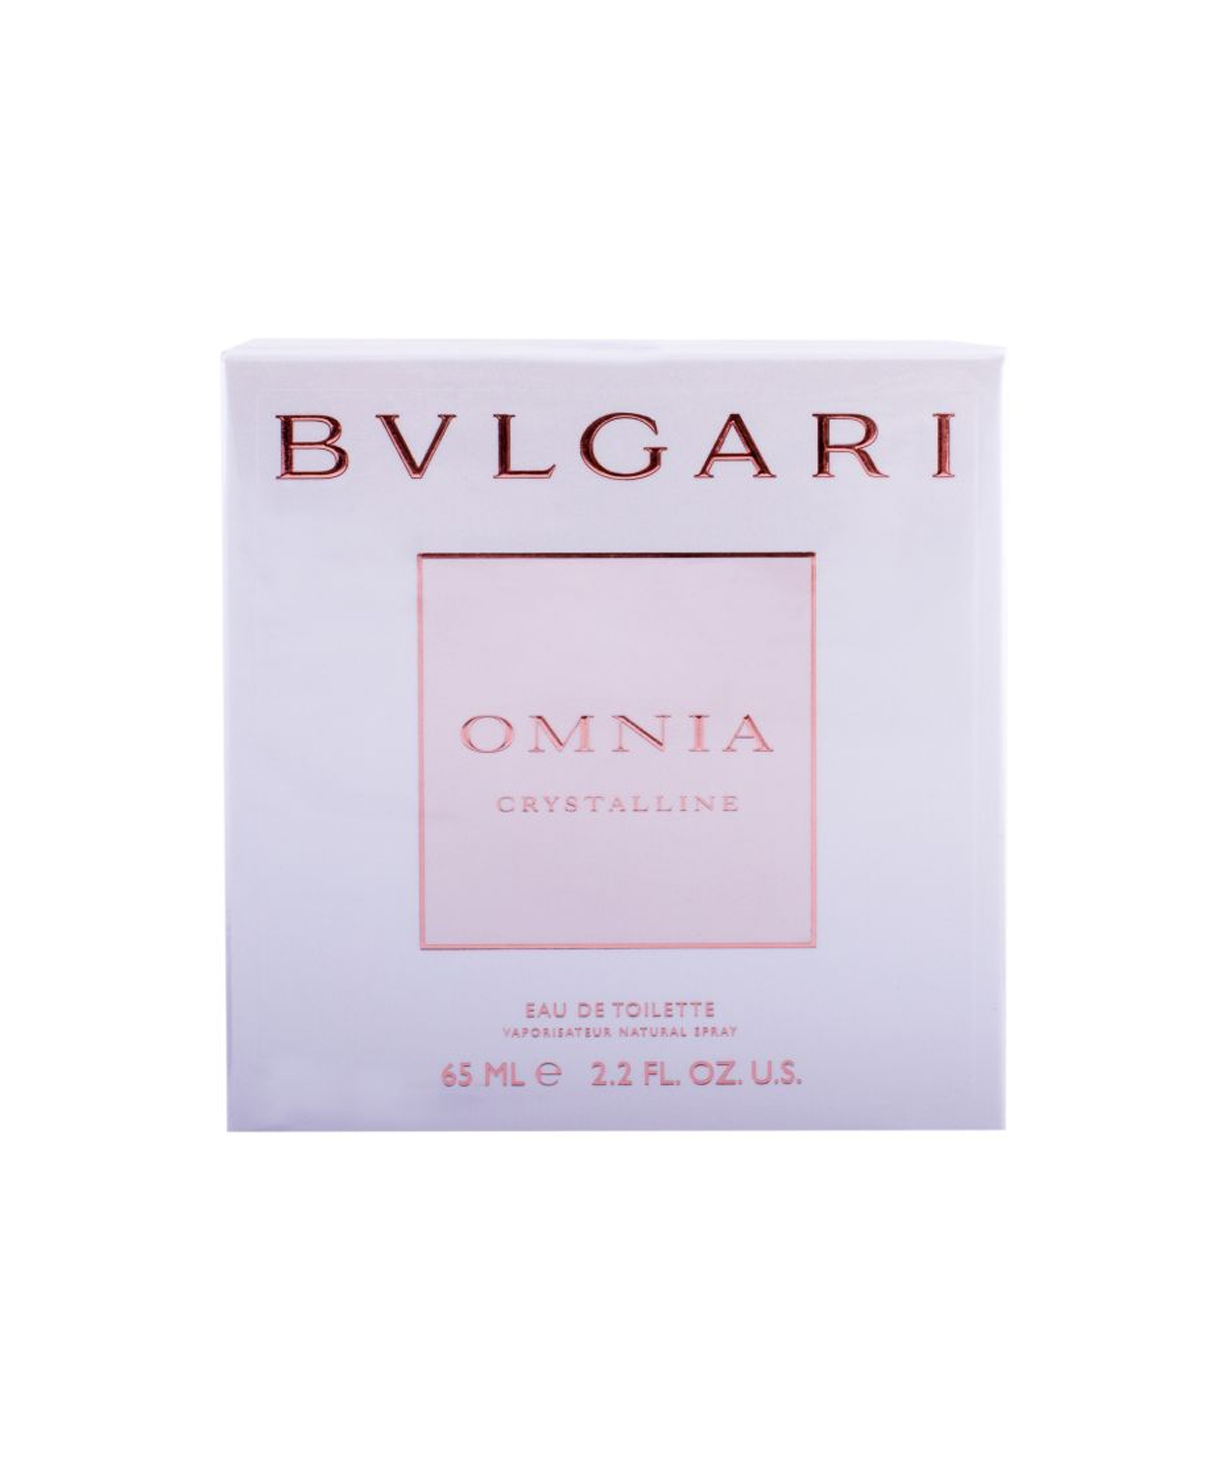 Օծանելիք «Bvlgari» Omnia Crystalline, կանացի, 65 մլ